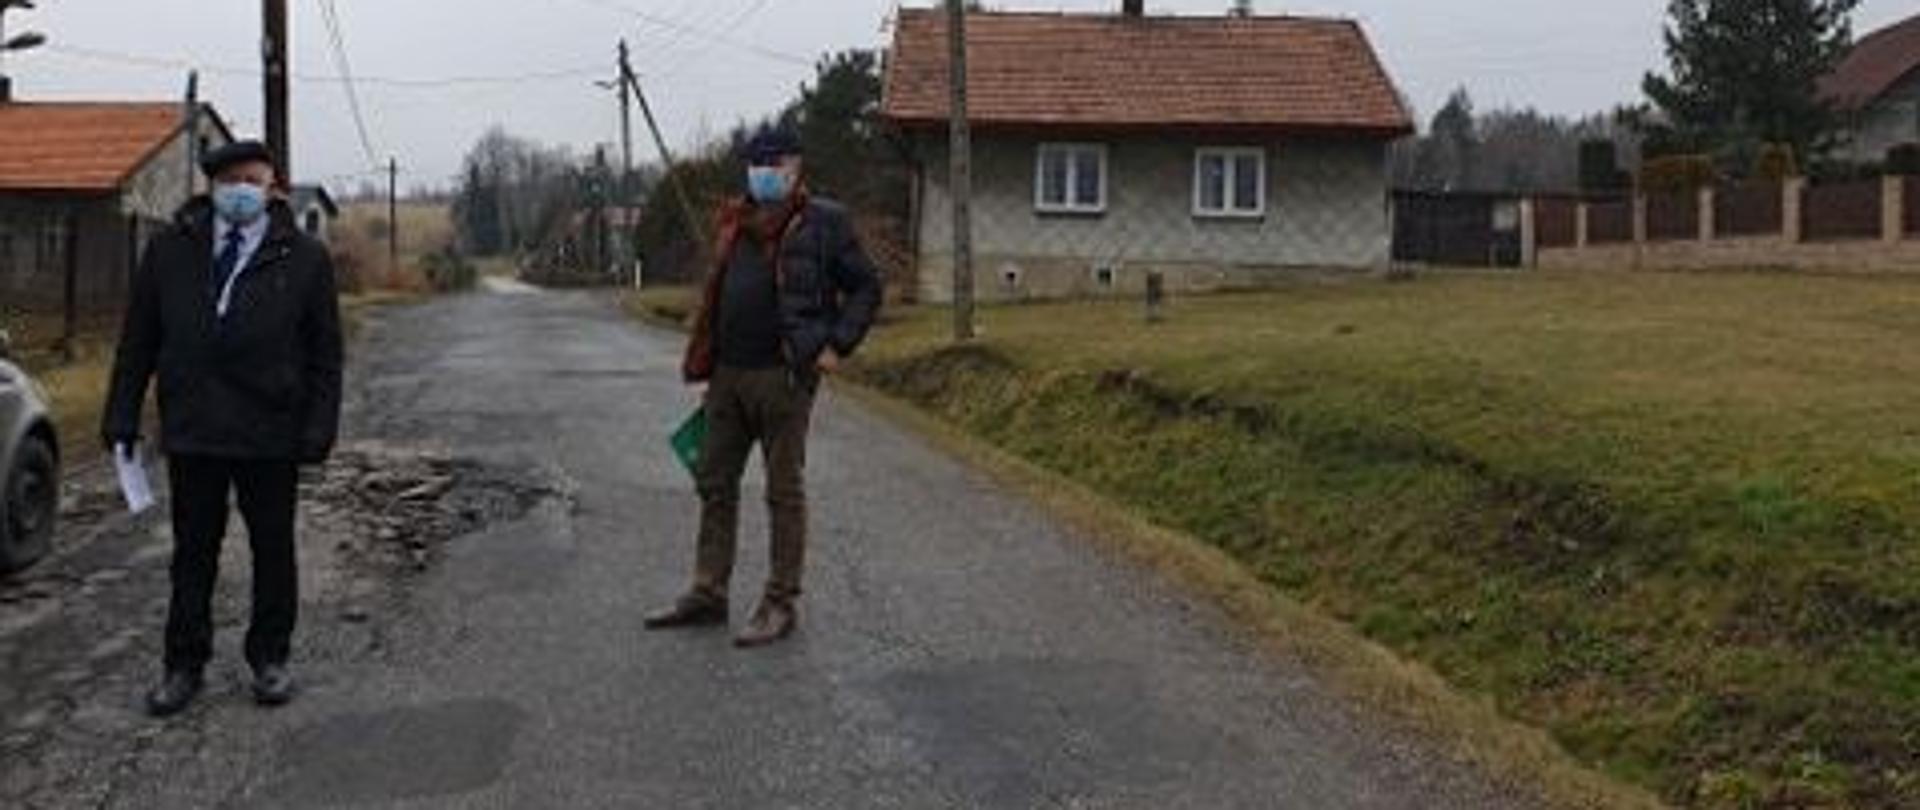 Zdjęcie uszkodzonej drogi we wsi Podolany. Na pierwszym planie wizytujący wraz z pracownikiem urzędu Burmistrz miasta Kalwaria Zebrzydowska. W oddali po obu stronie drogi budynki.